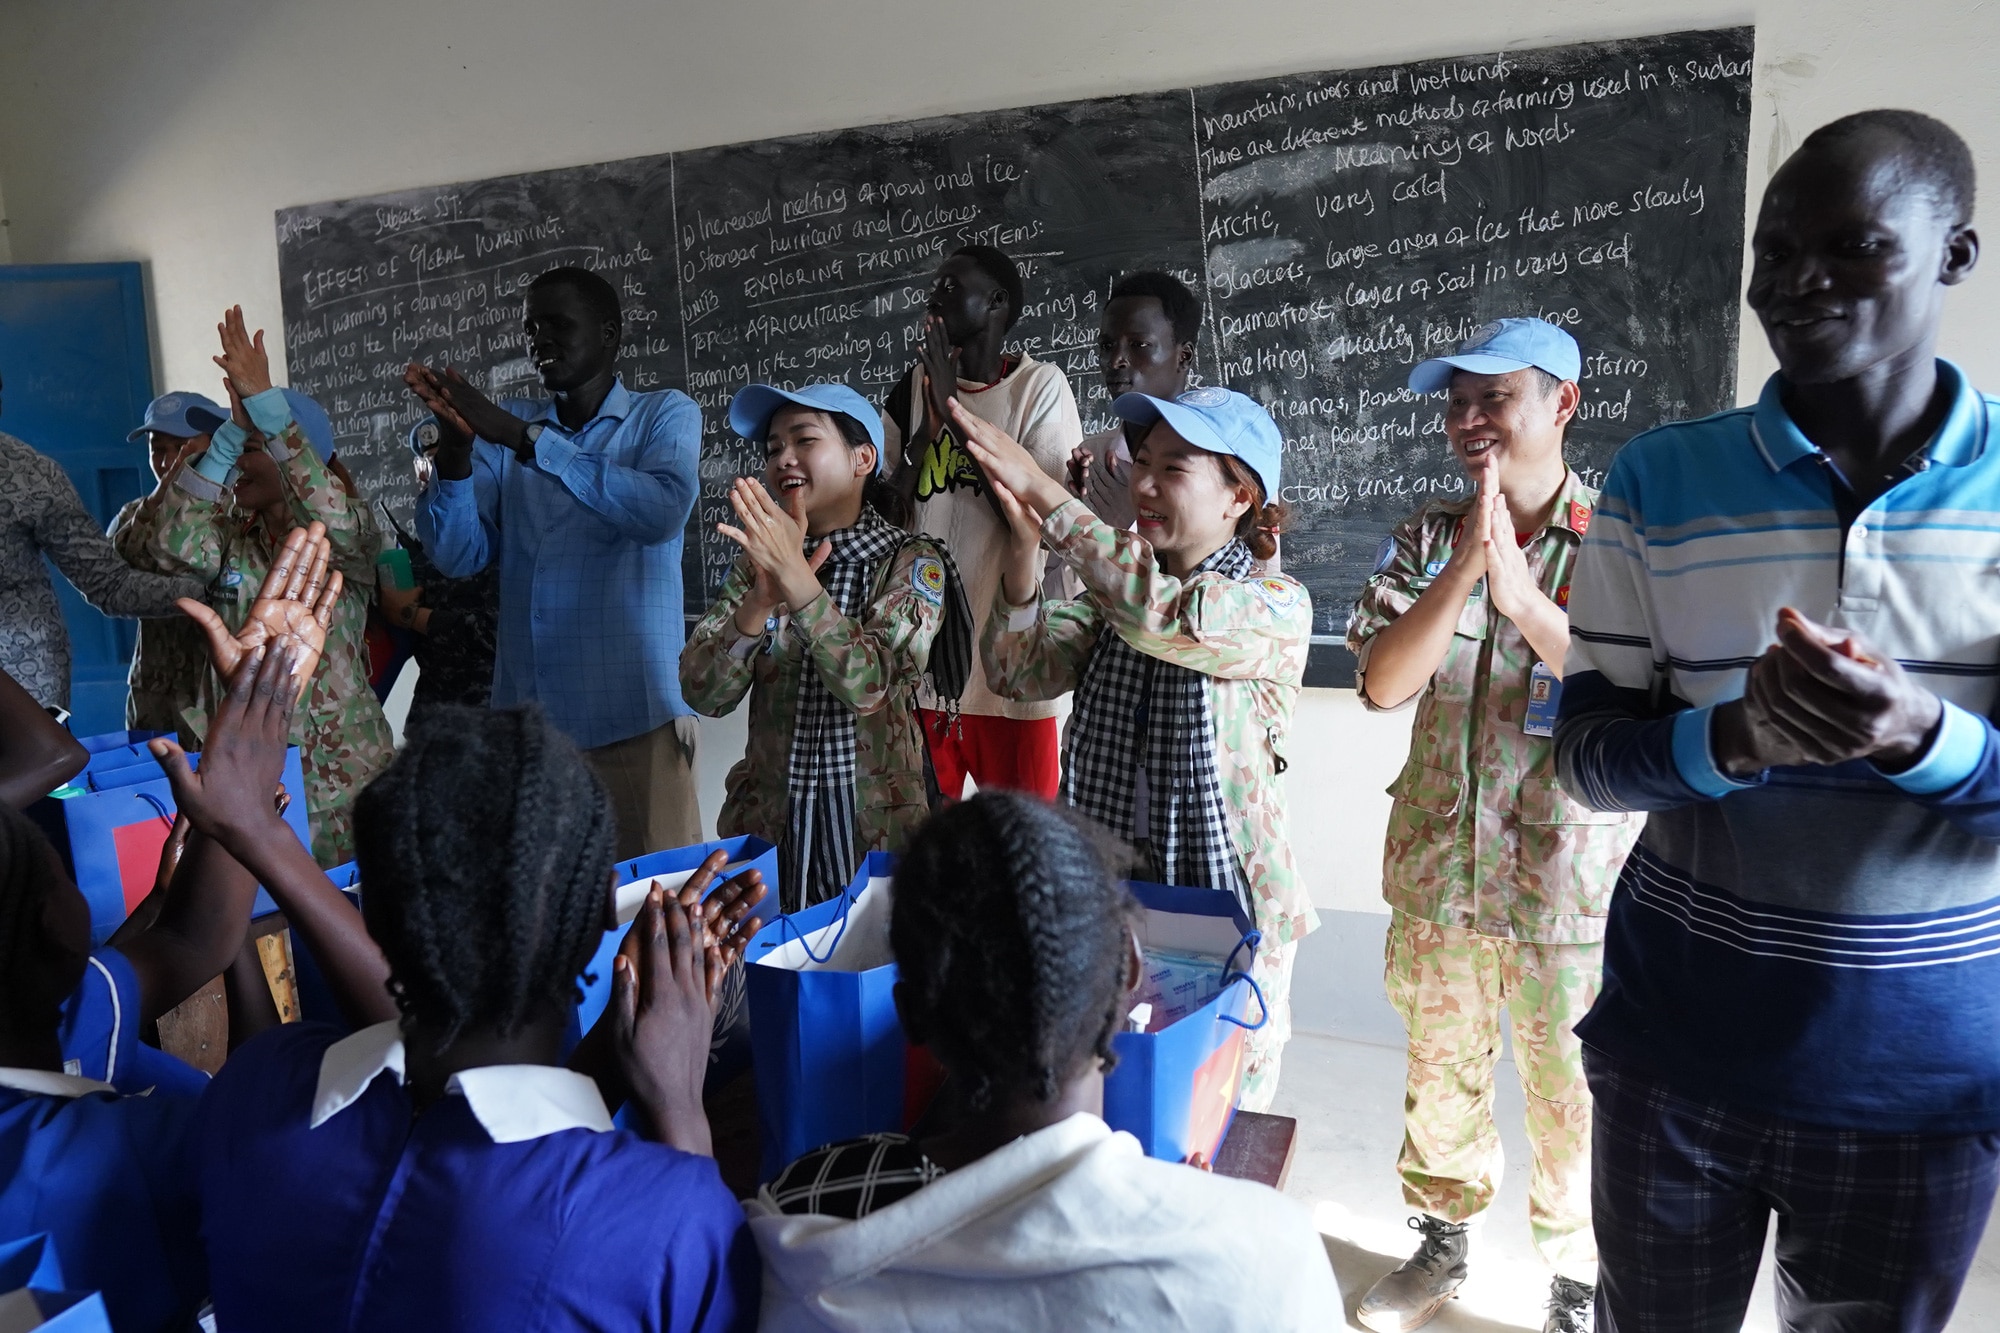 Bệnh viện dã chiến cấp 2 số 5 tổ chức trò chơi và hát cùng các học sinh nữ tại một trường cấp 1 tại Nam Sudan - Ảnh: BVCC